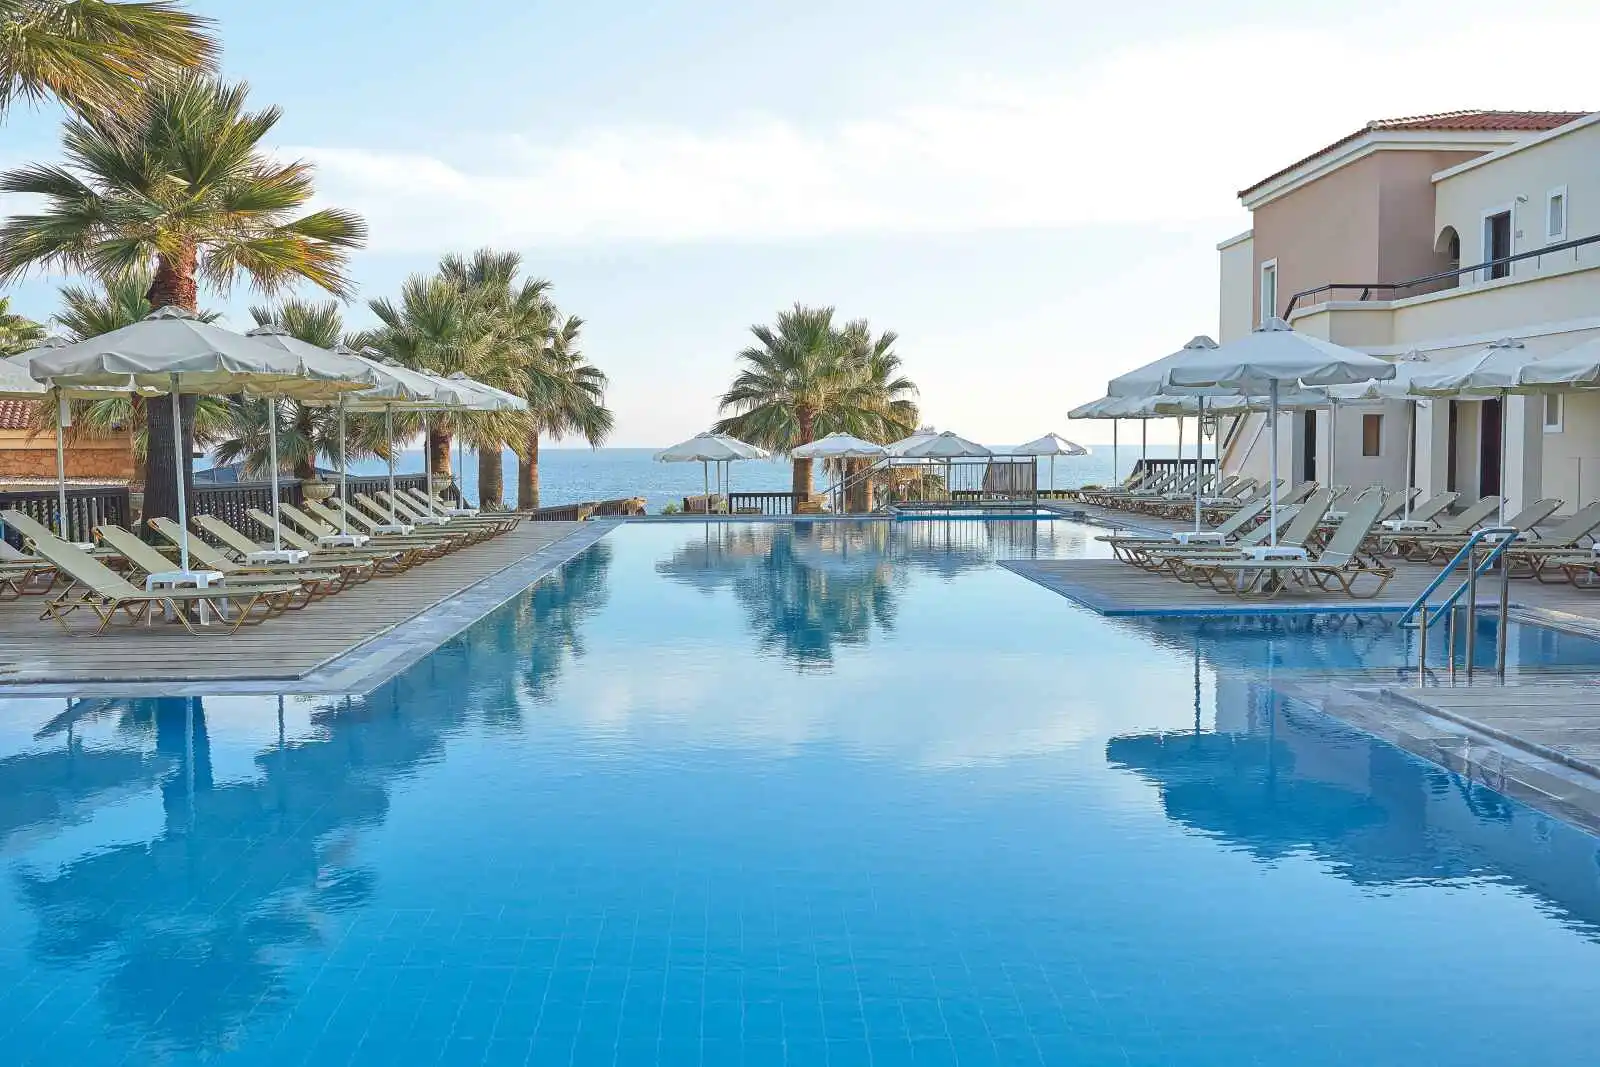 Crète - Rethymnon - Grèce - Iles grecques - Hôtel Grecotel Marine Palace & Aqua Park 4*